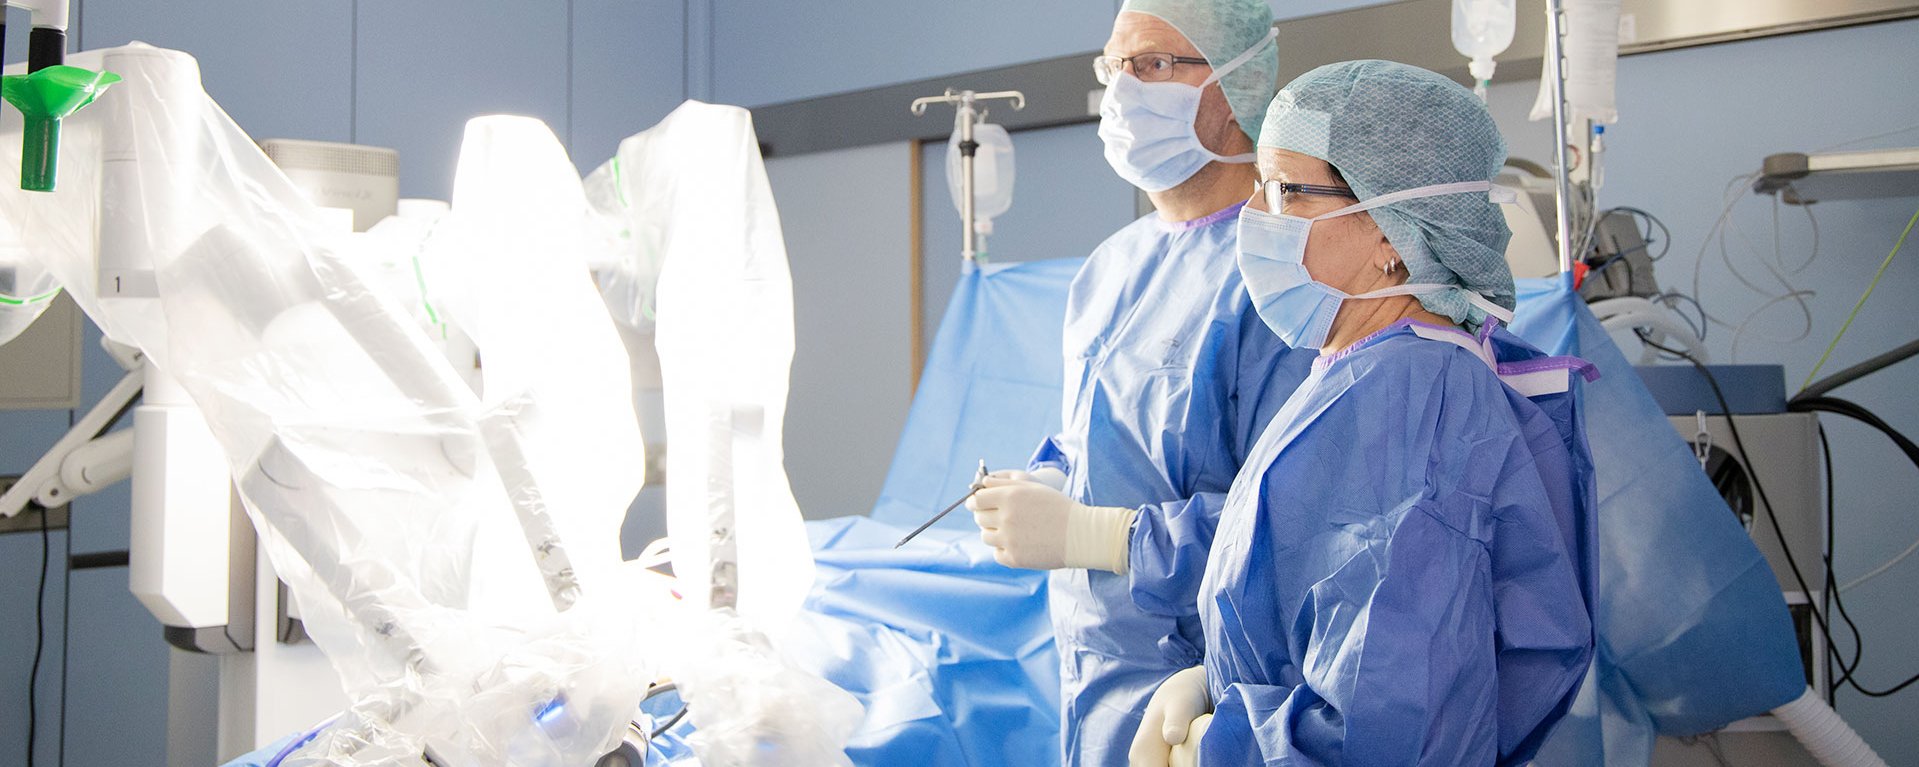 Einblick in die Hernienchirurgie im Klinikum Kempten (Allgäu)